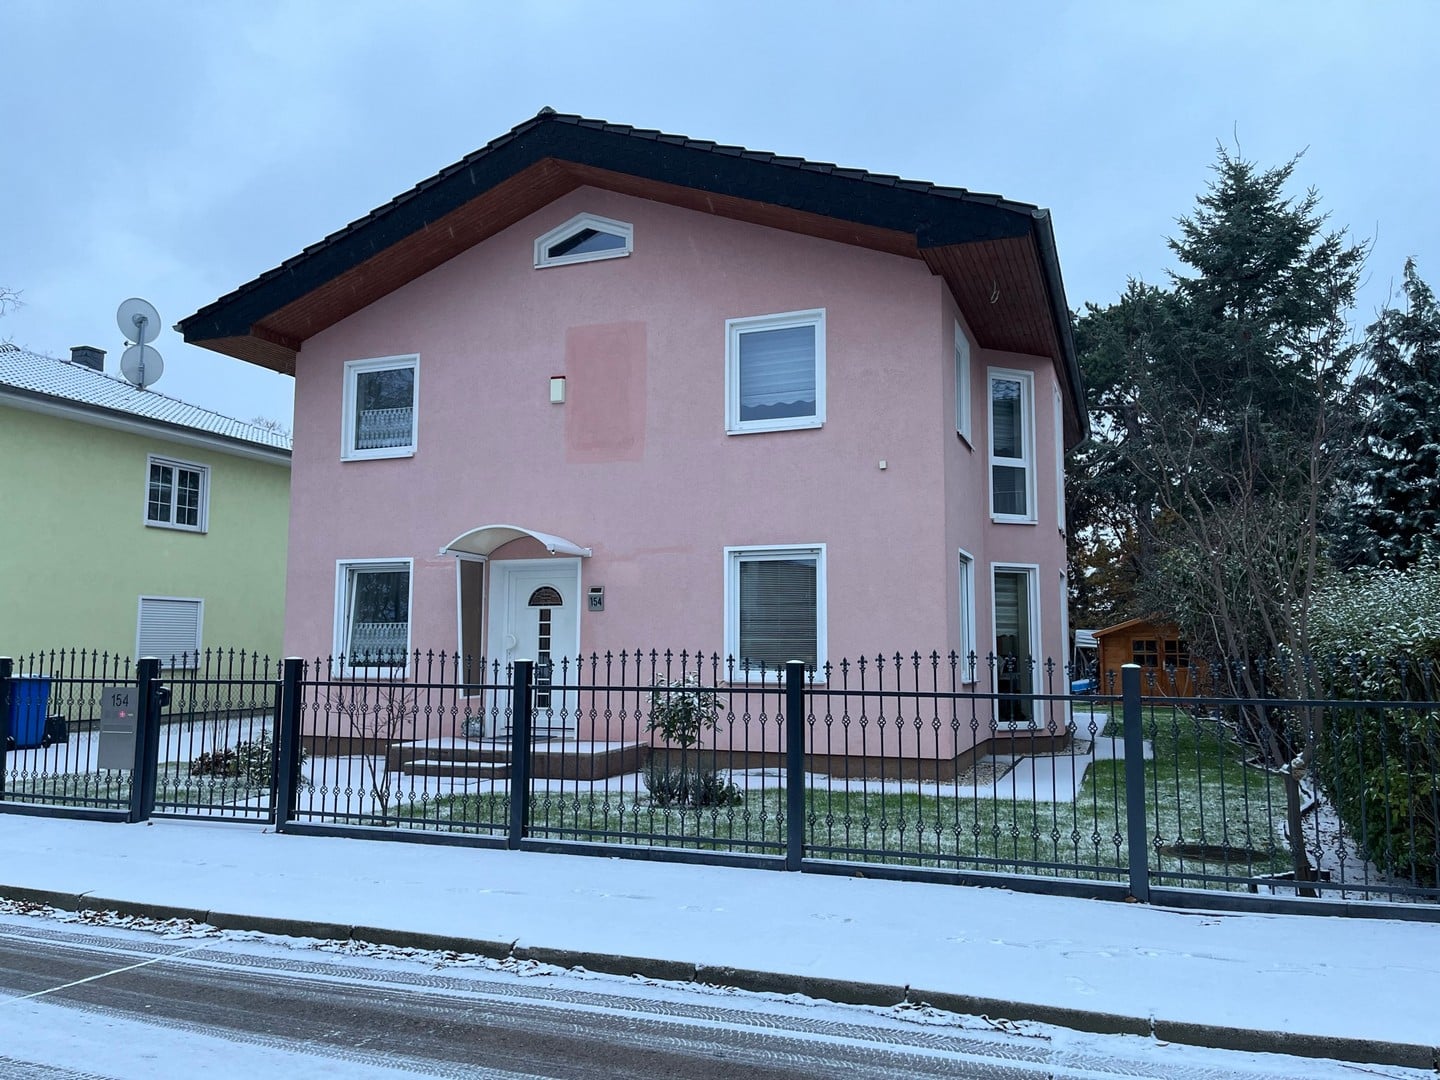 Rosa Einfamilienhaus mit Schnee und Zaun.